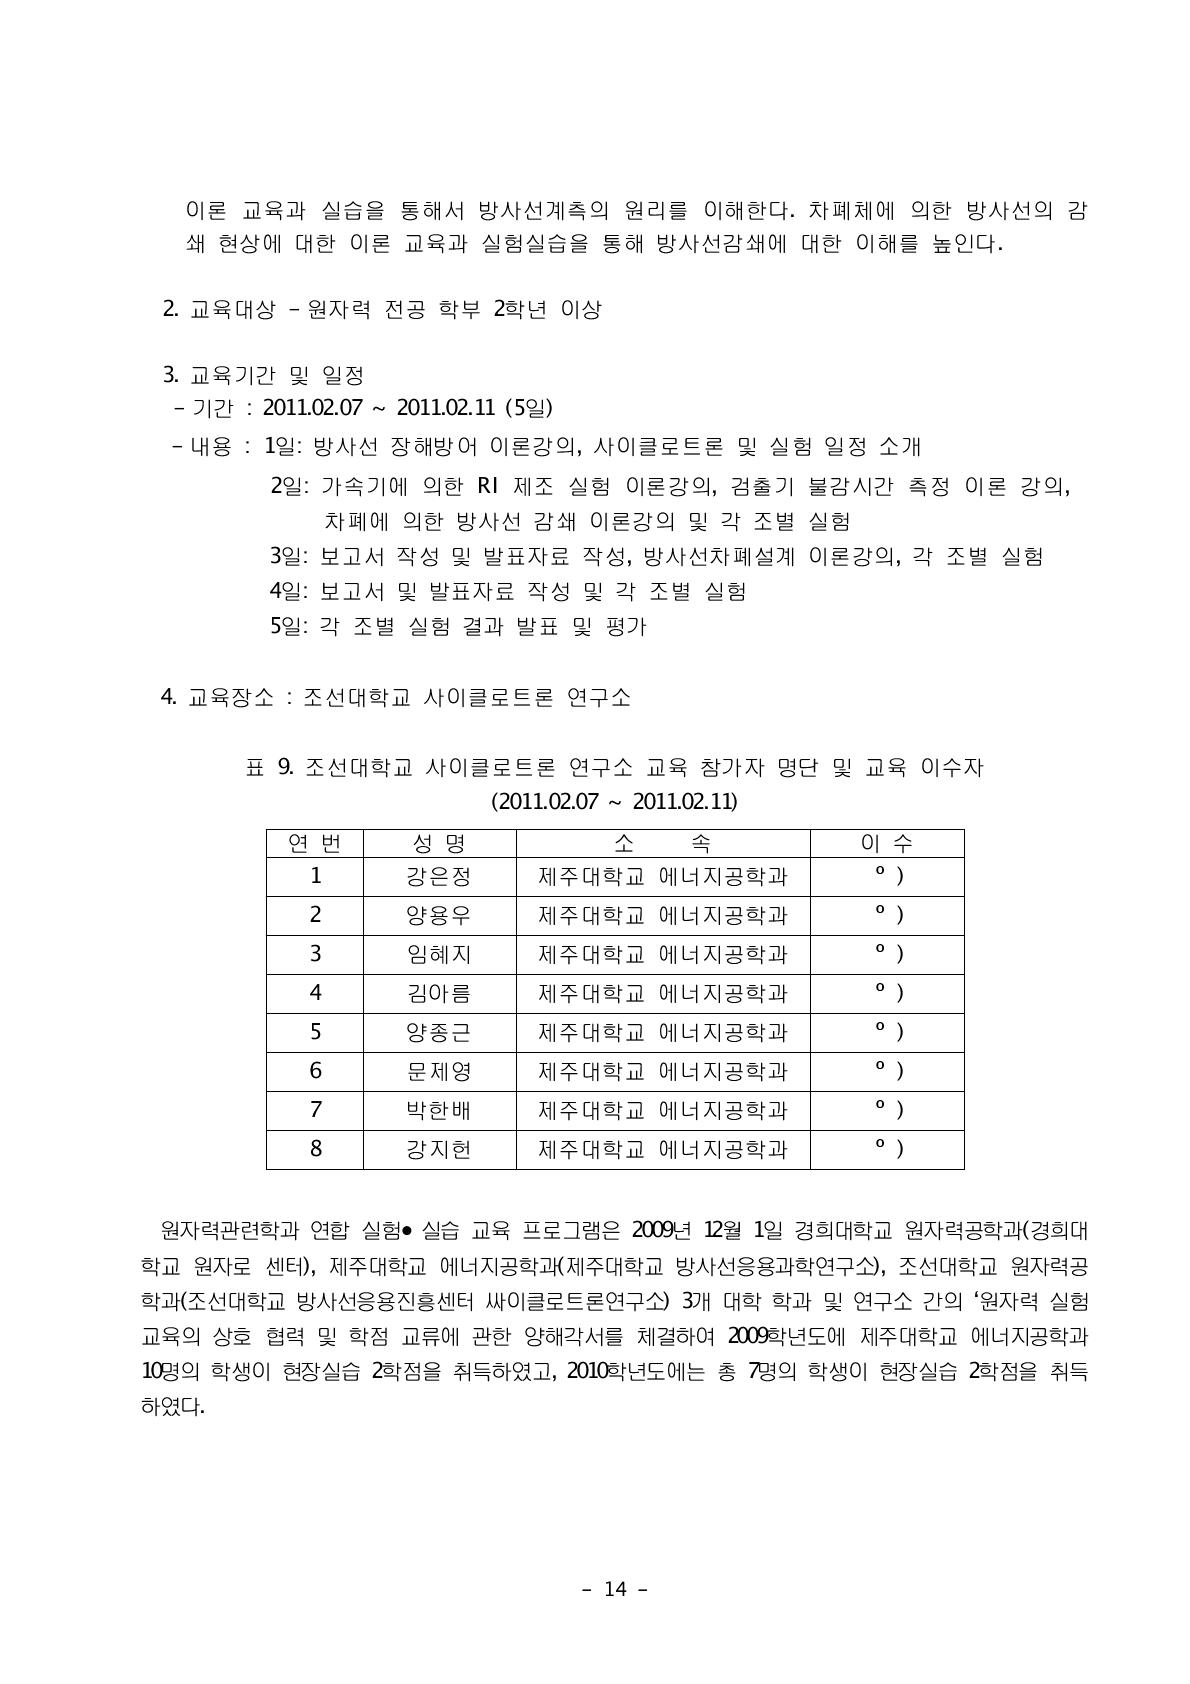 조선대학교 사이클로트론 연구소 교육 참가자 명단 및 교육 이수자